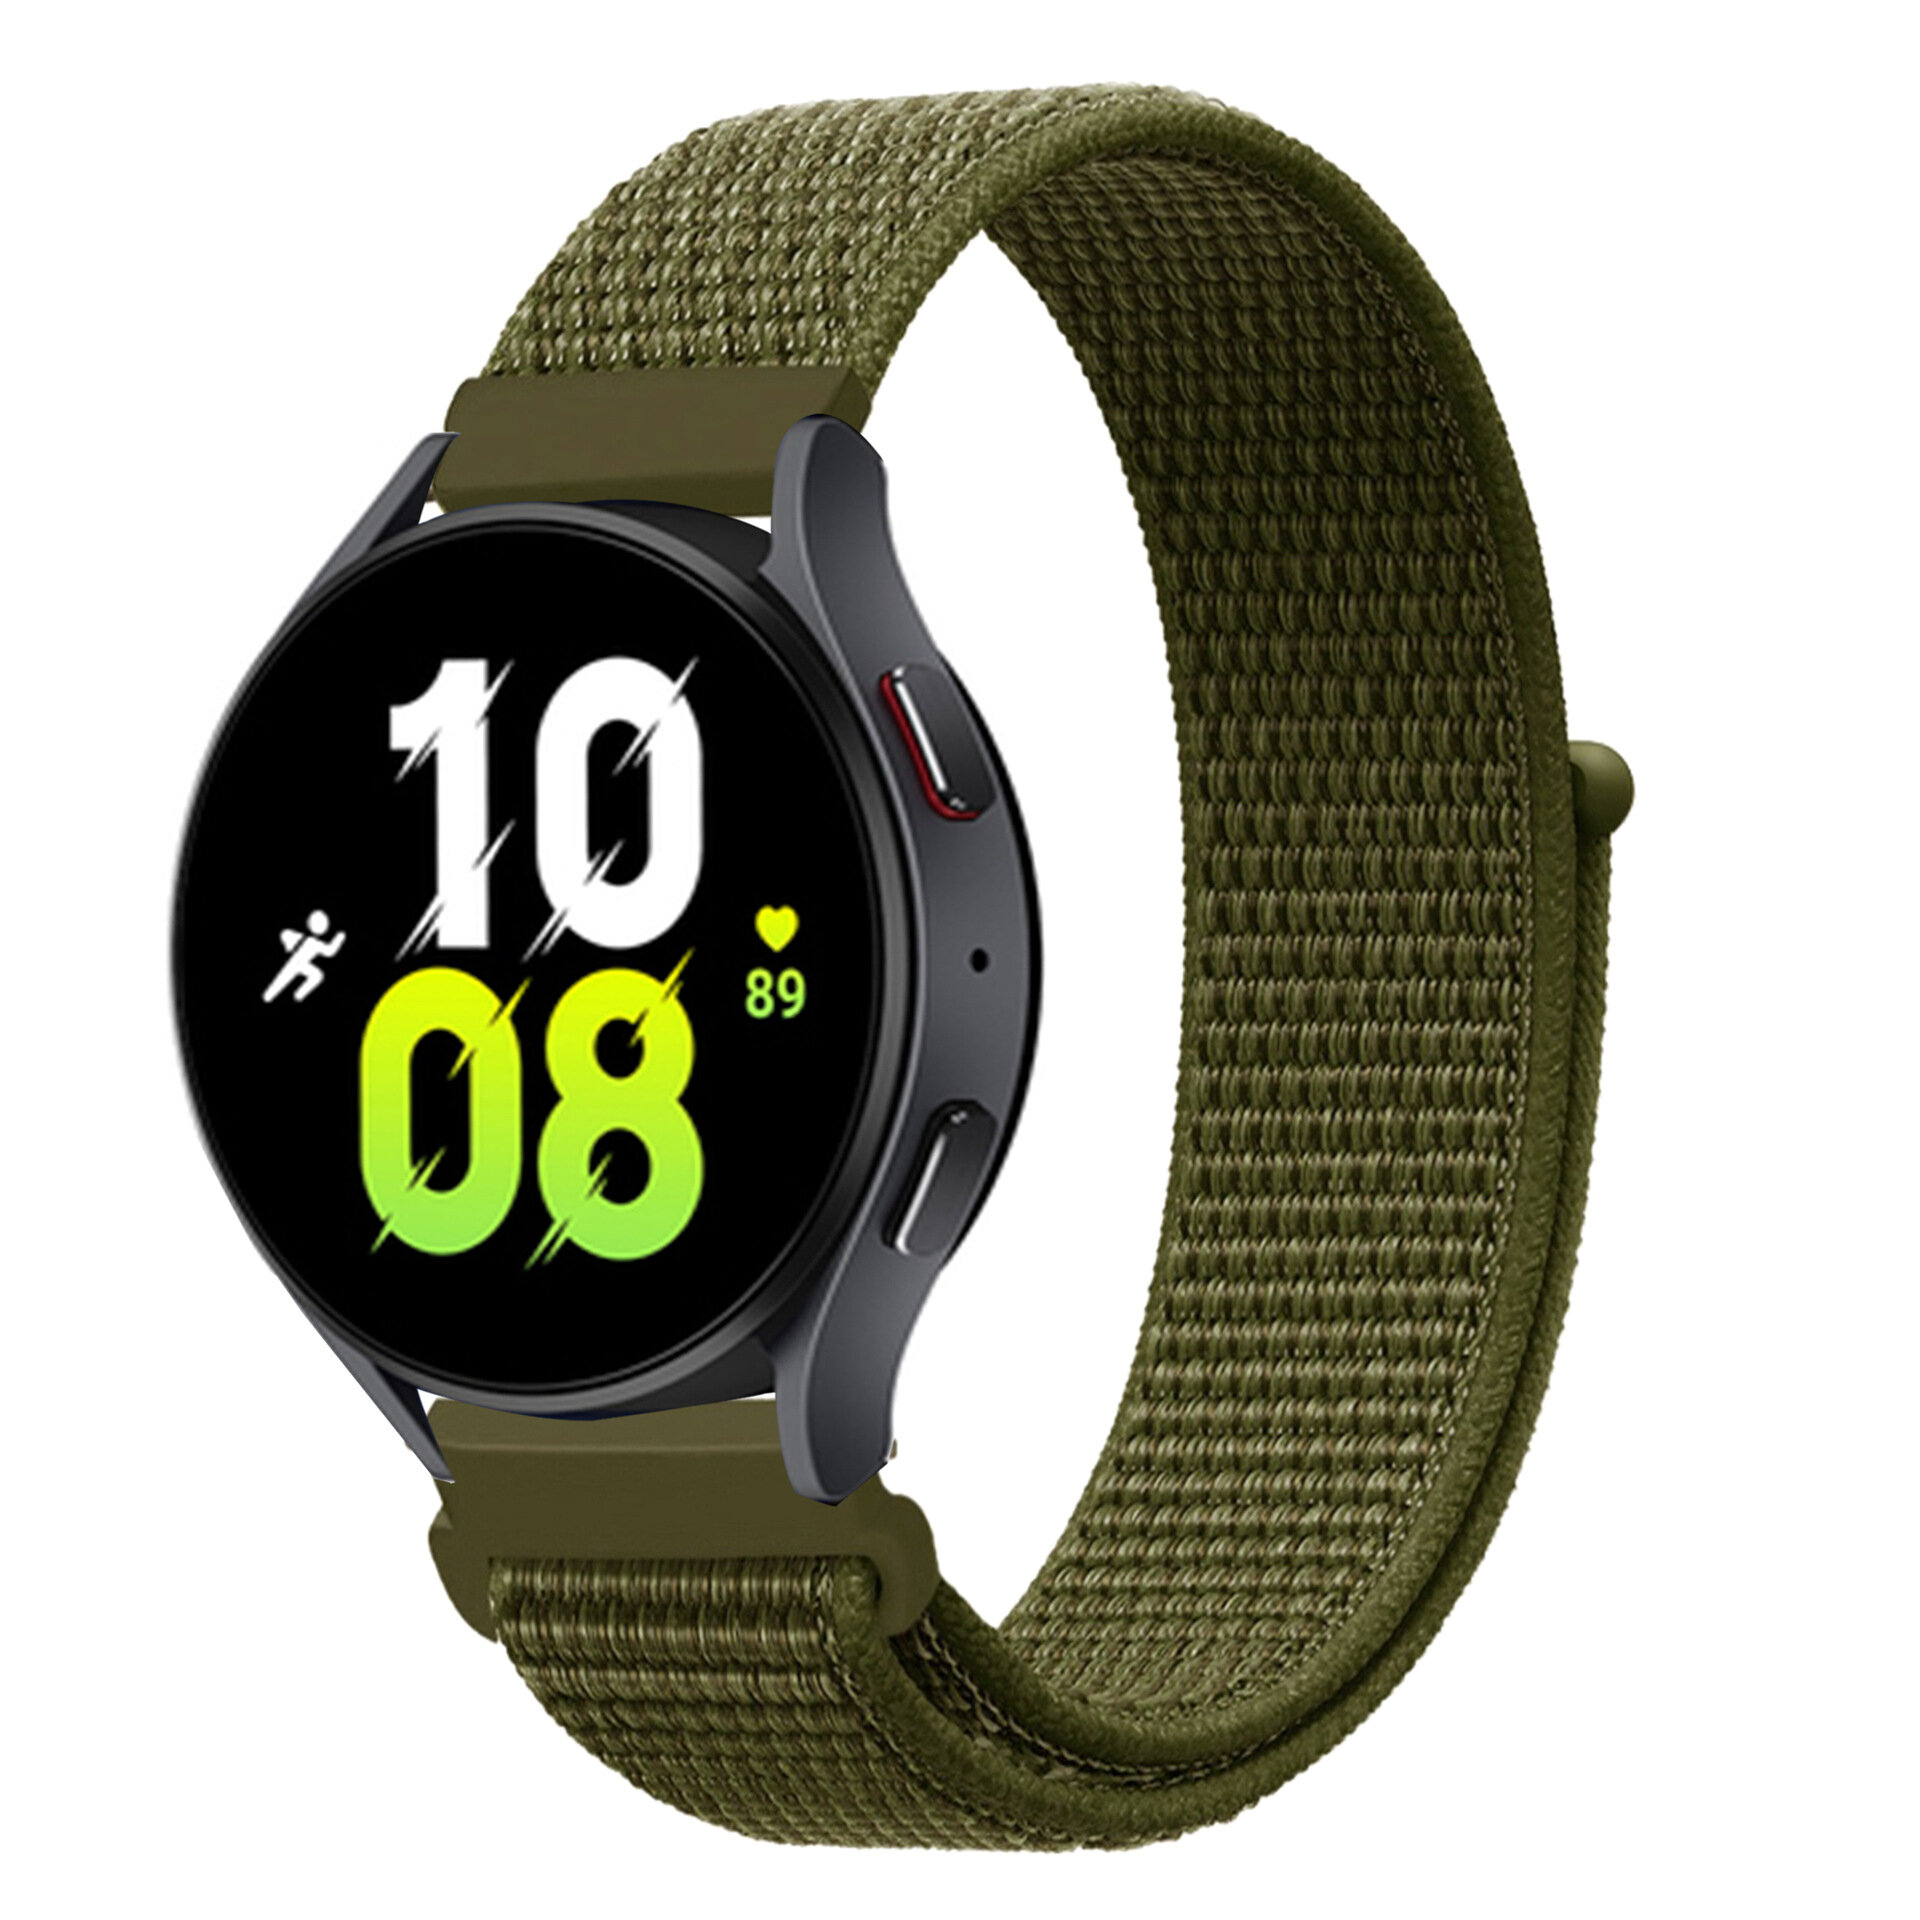 Нейлоновый универсальный ремешок для смарт-часов с креплением 20 мм Garmin, Samsung Galaxy Watch, Huawei Watch, Honor, Xiaomi Amazfit, 36 оливково-зеленый